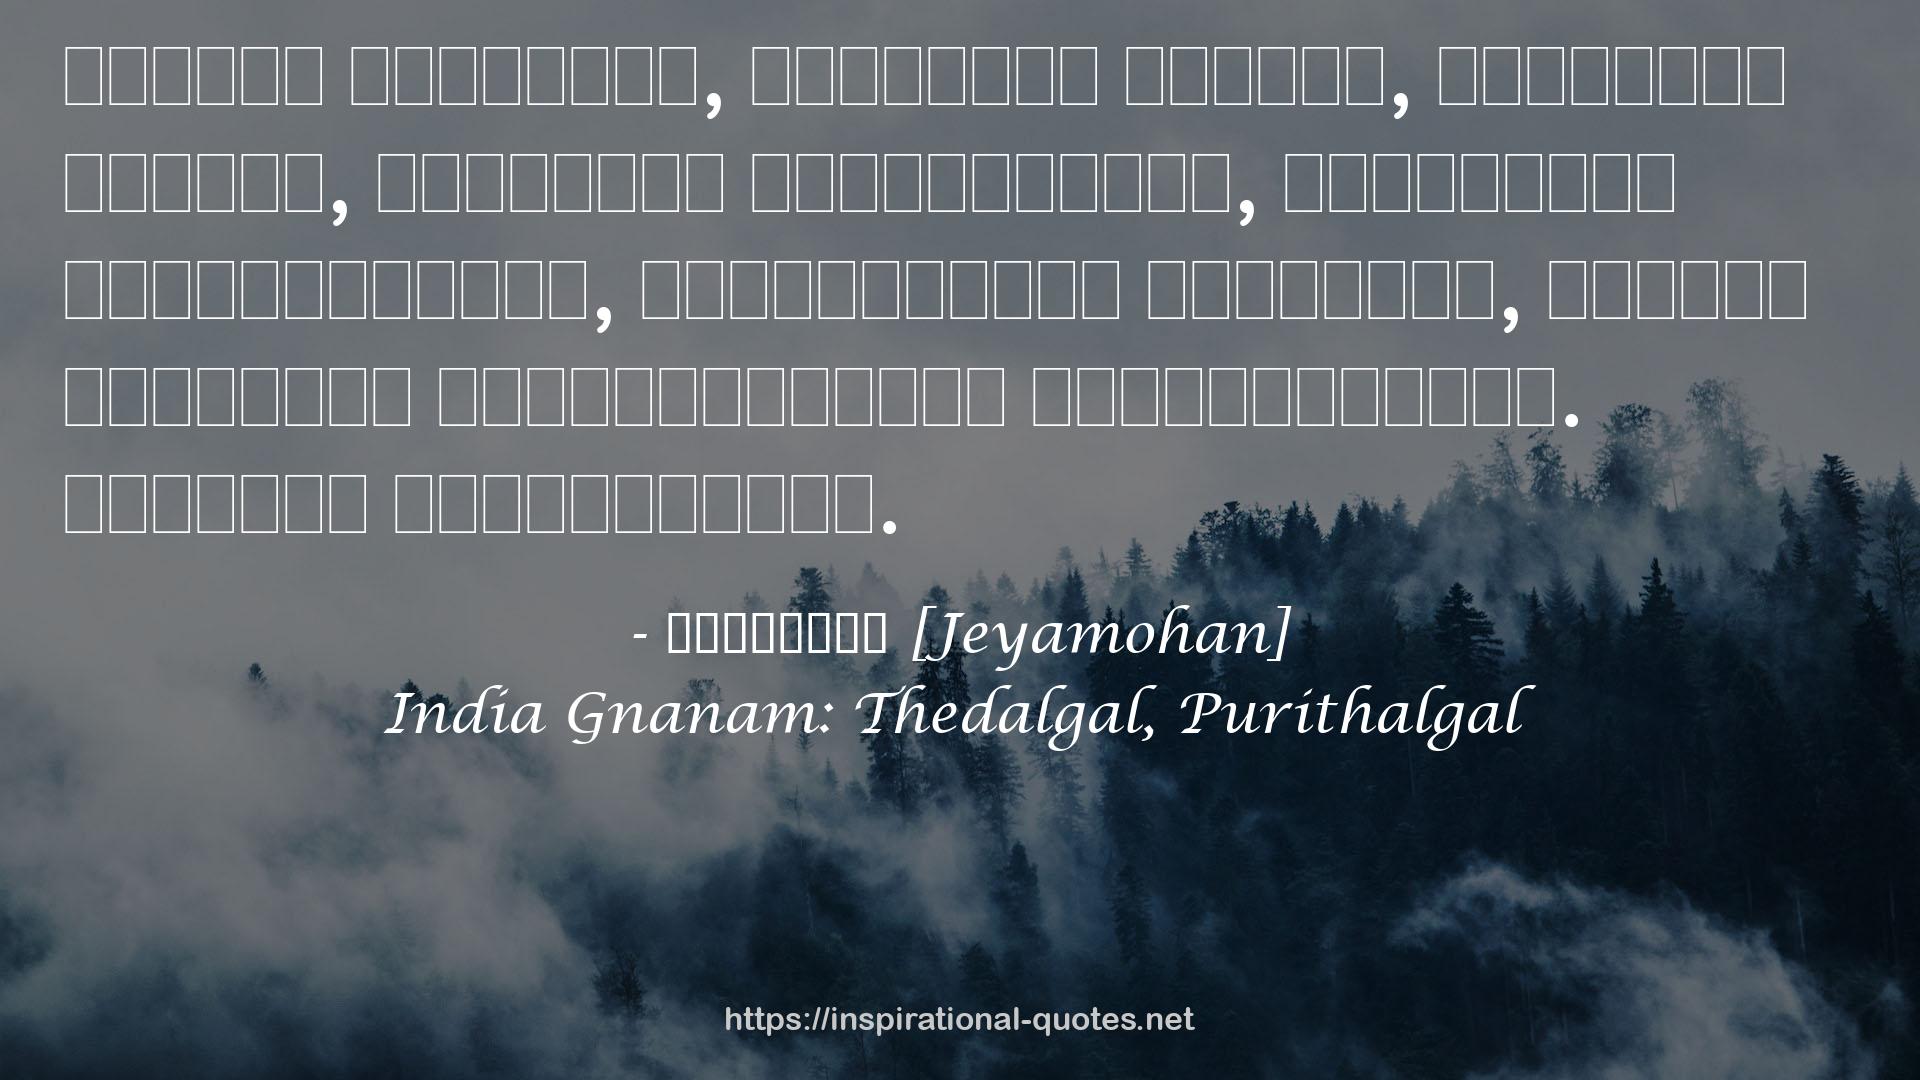 India Gnanam: Thedalgal, Purithalgal QUOTES